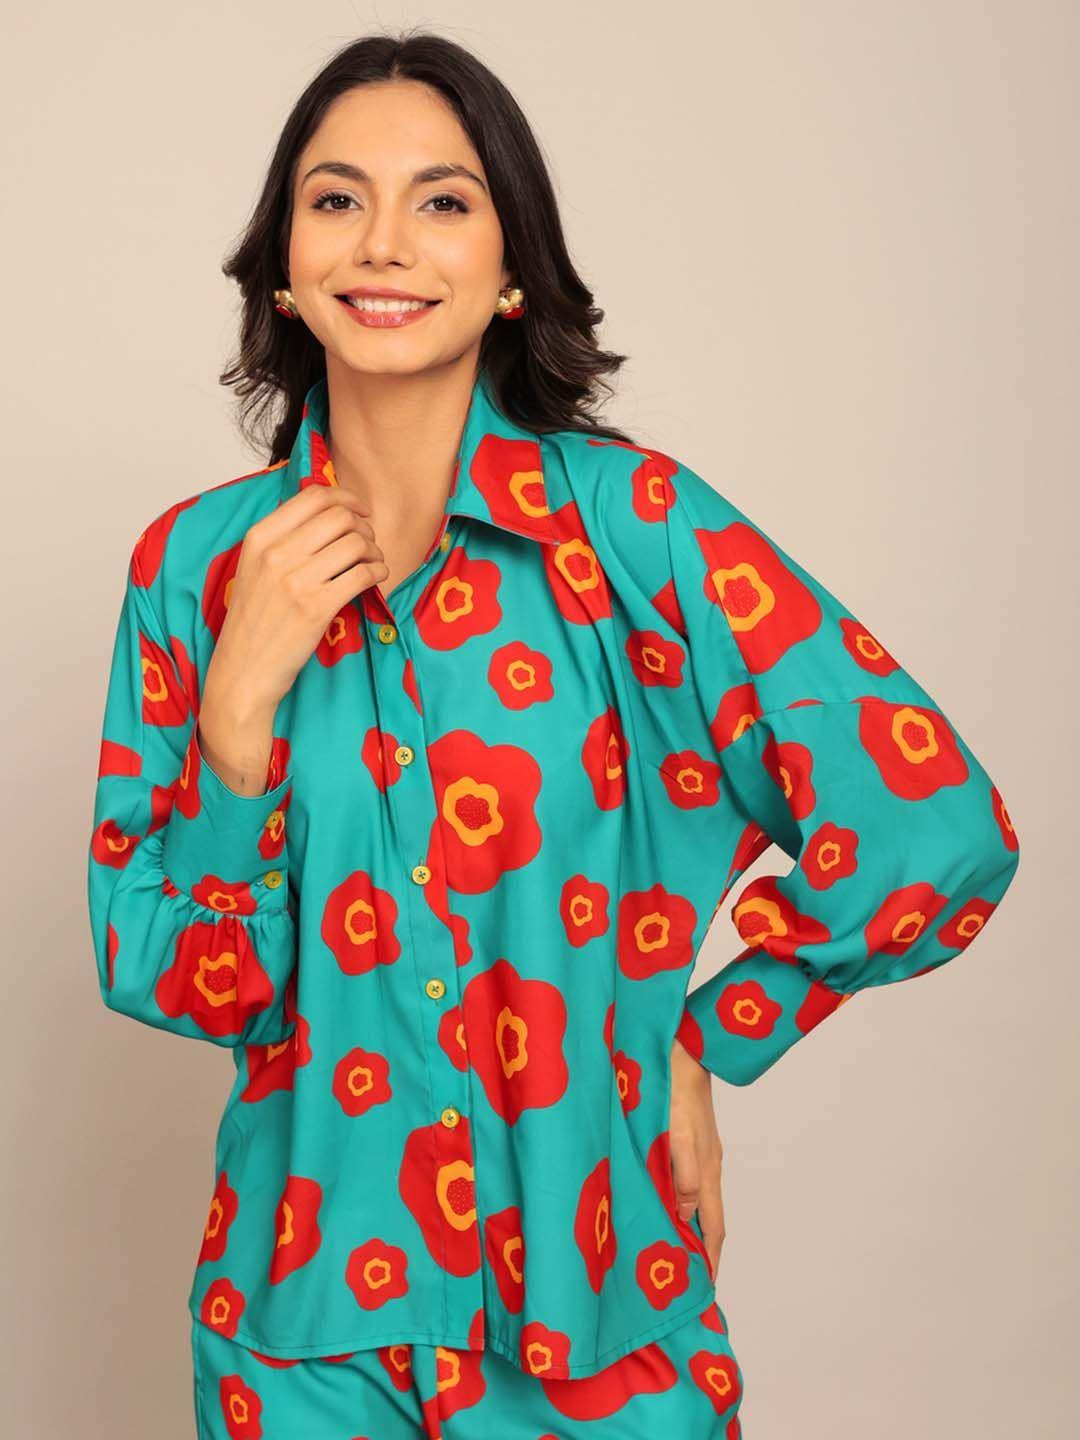 kaori by shreya agarwal women comfort opaque printed casual shirt